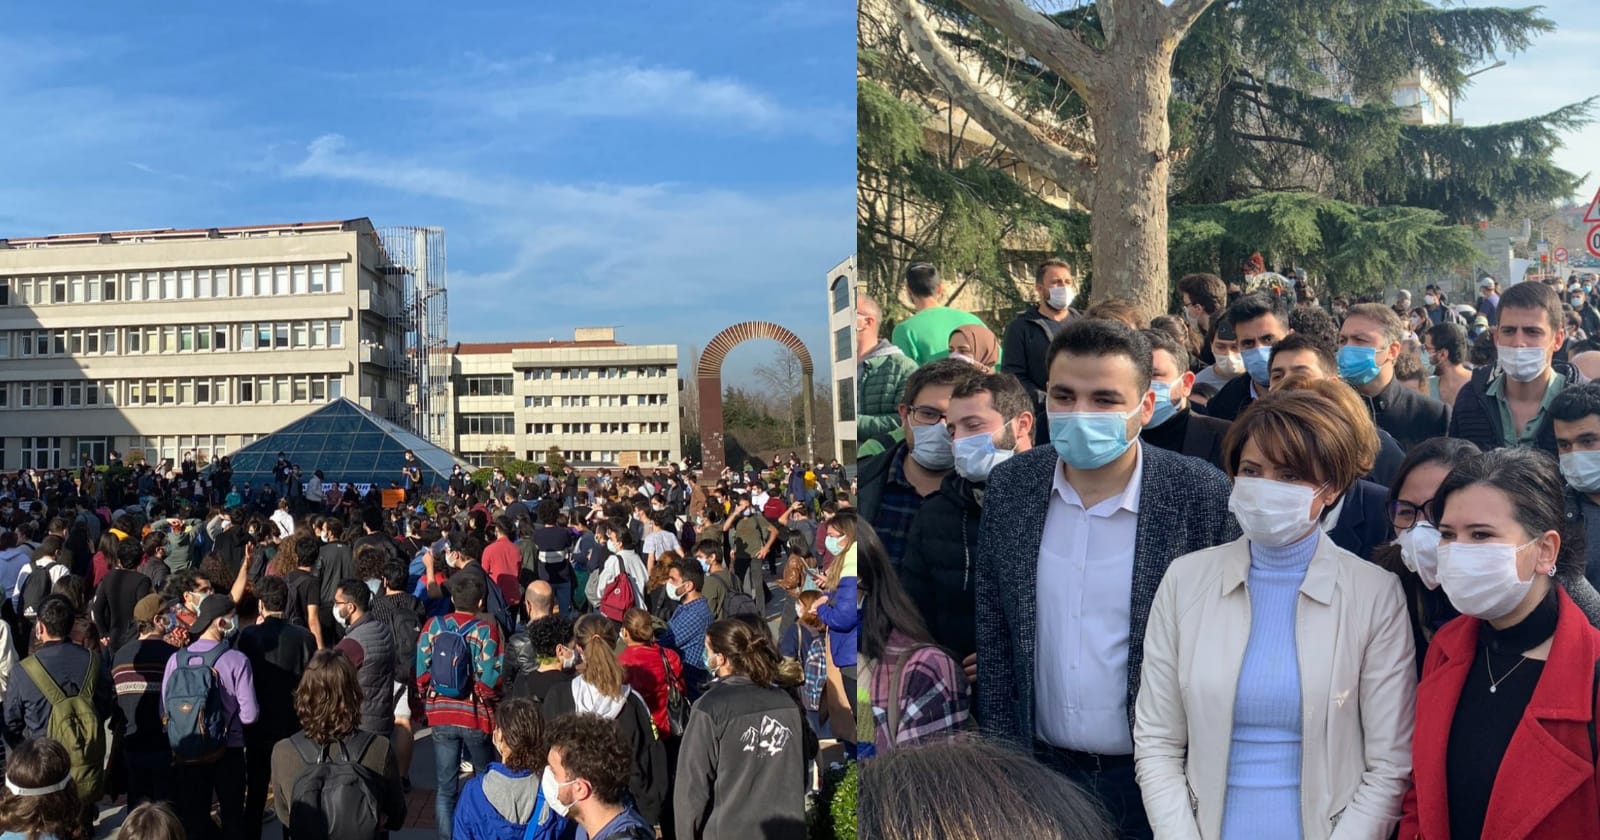 Boğaziçi Üniversitesi'nde gergin saatler: Yasadışı eyleme polis müdahale etti